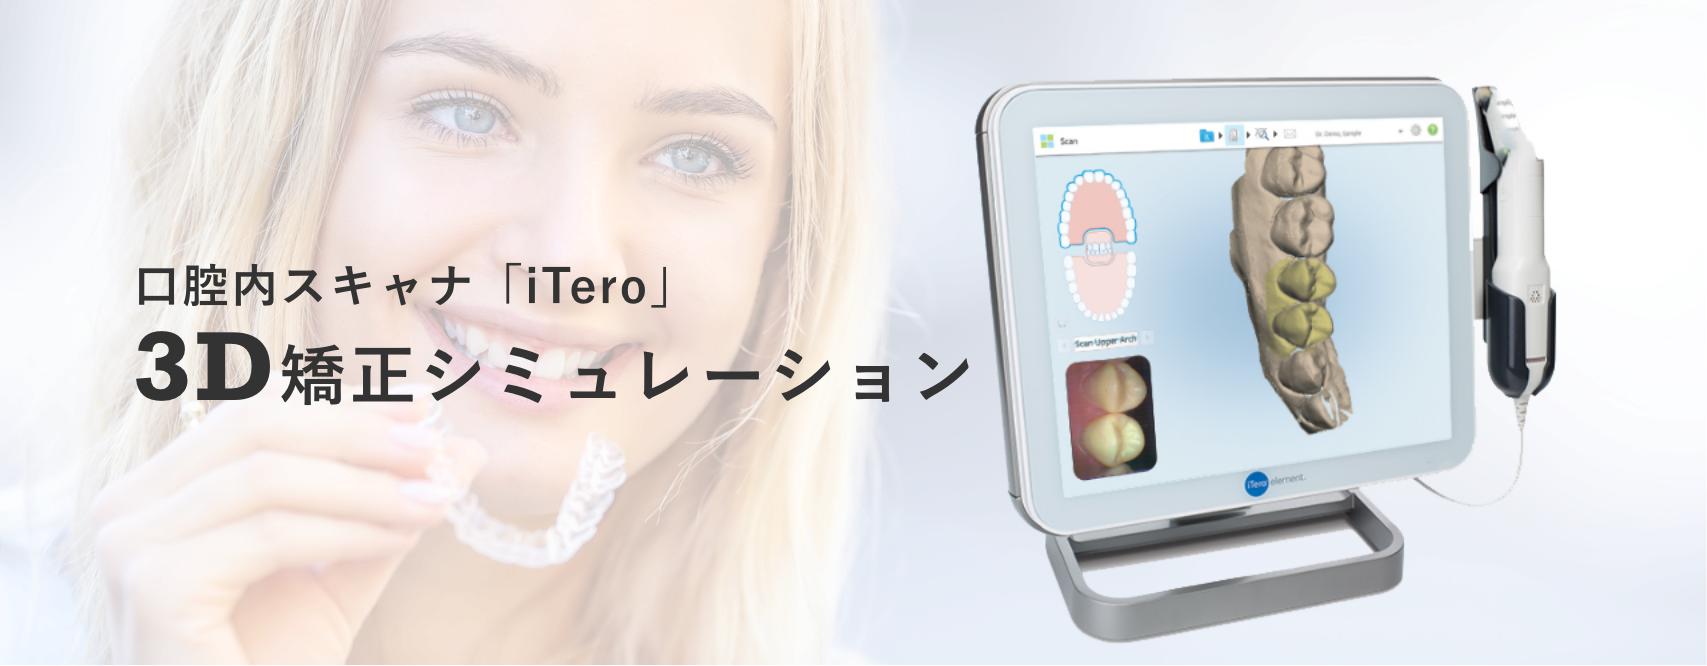 口腔内スキャナ「iTero」 3D矯正シミュレーション